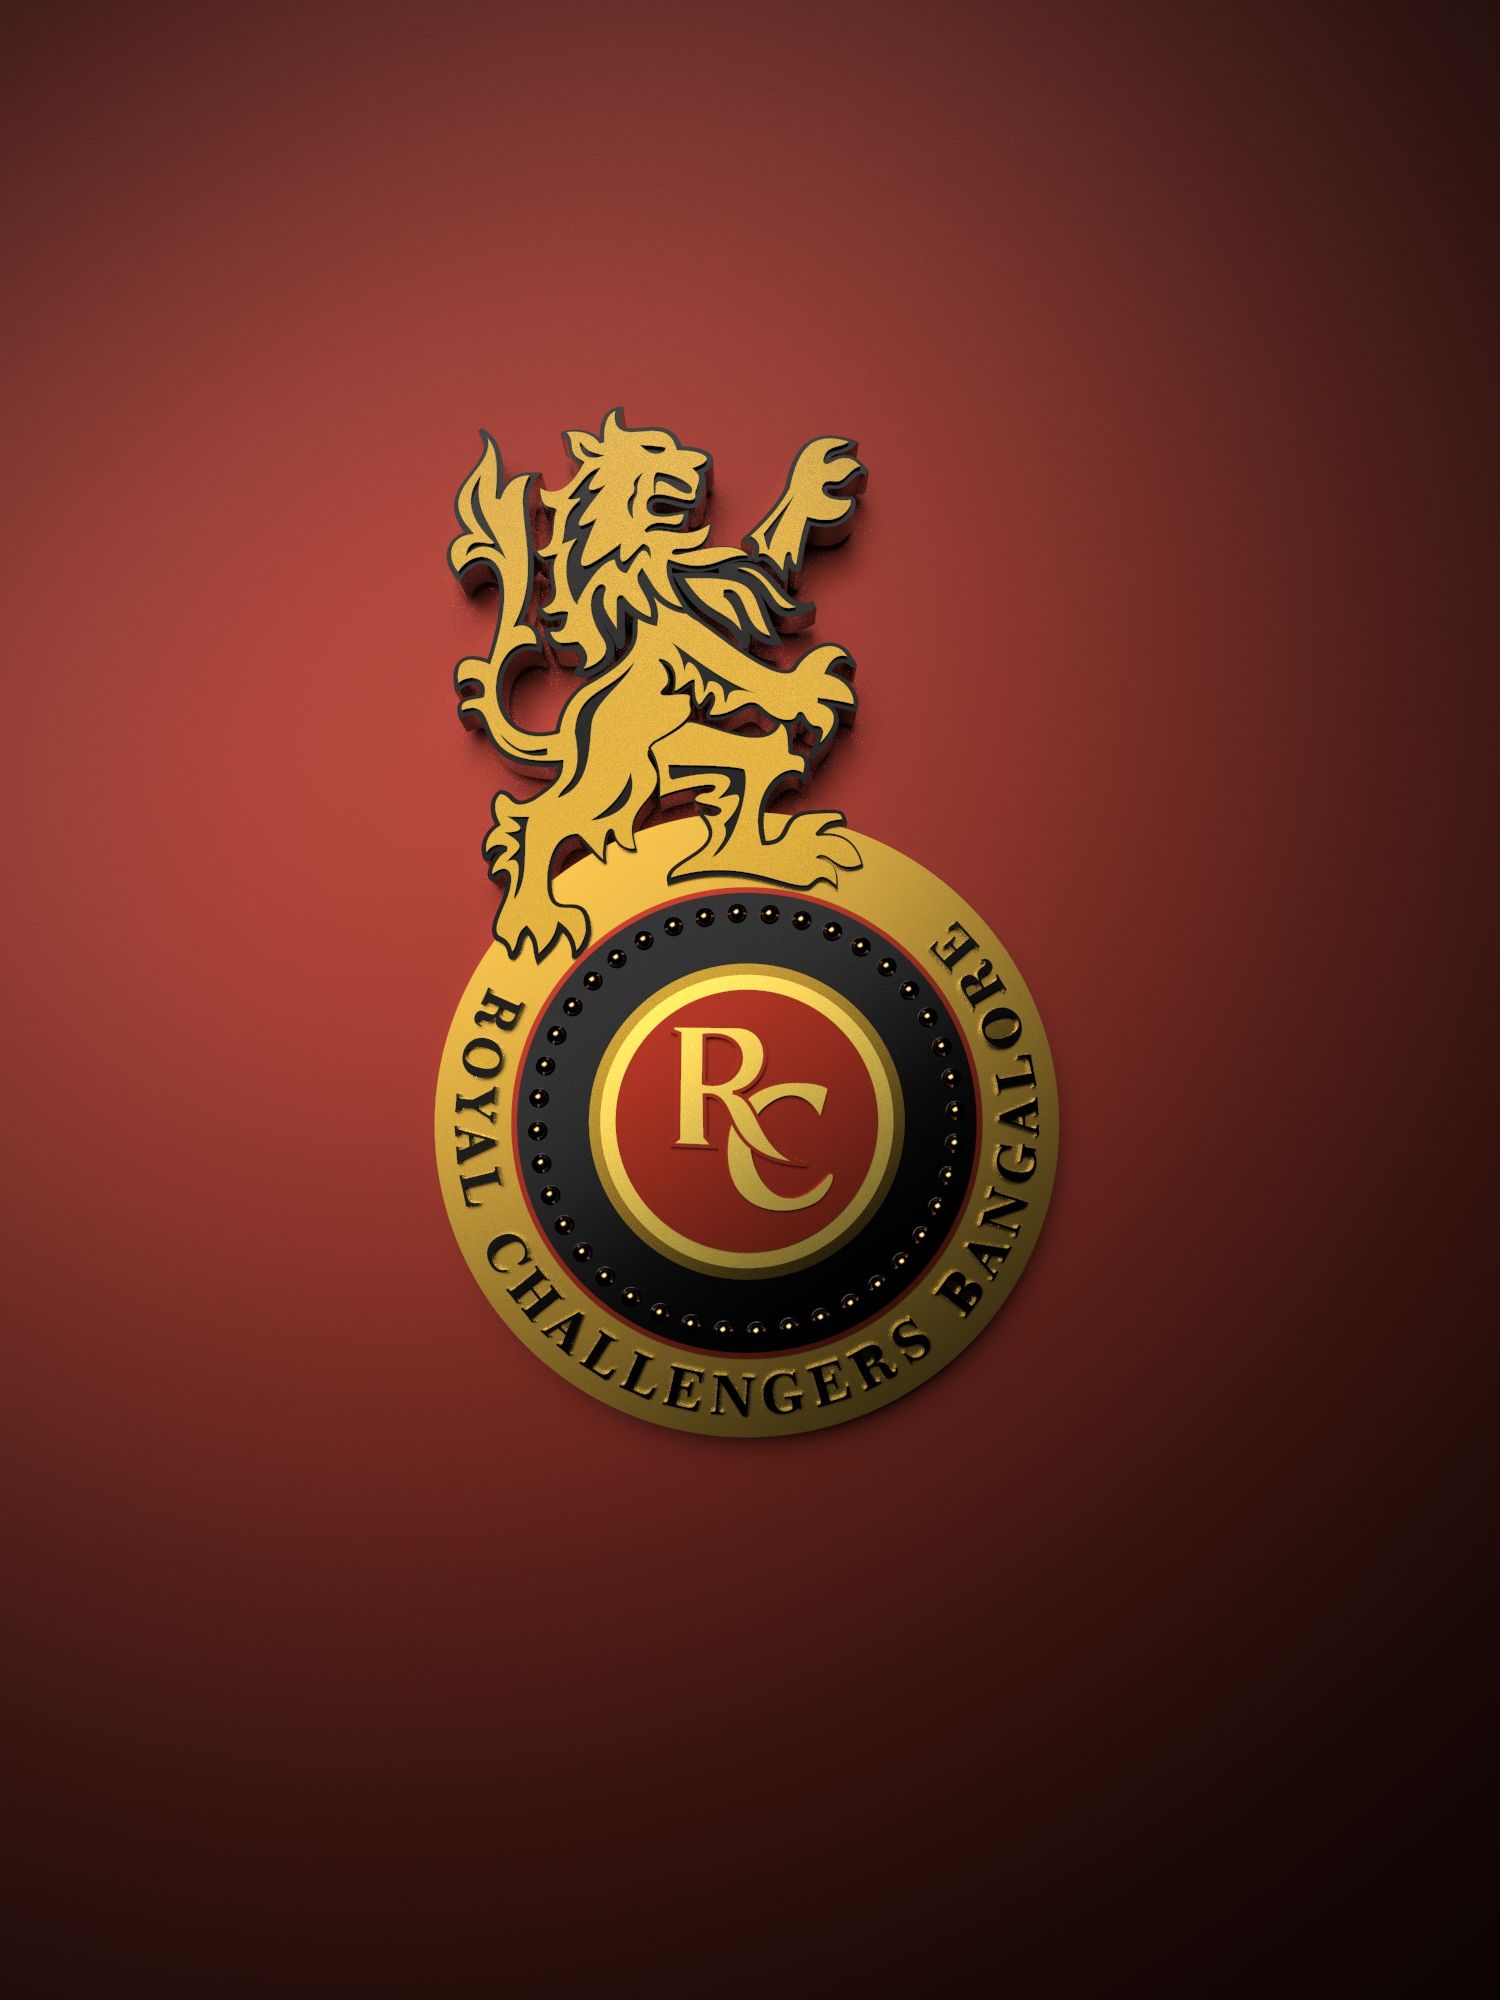 Royal Challengers Bangalore IPL metallic logo poster painting. Metallic logo, Logos, Royal challengers bangalore